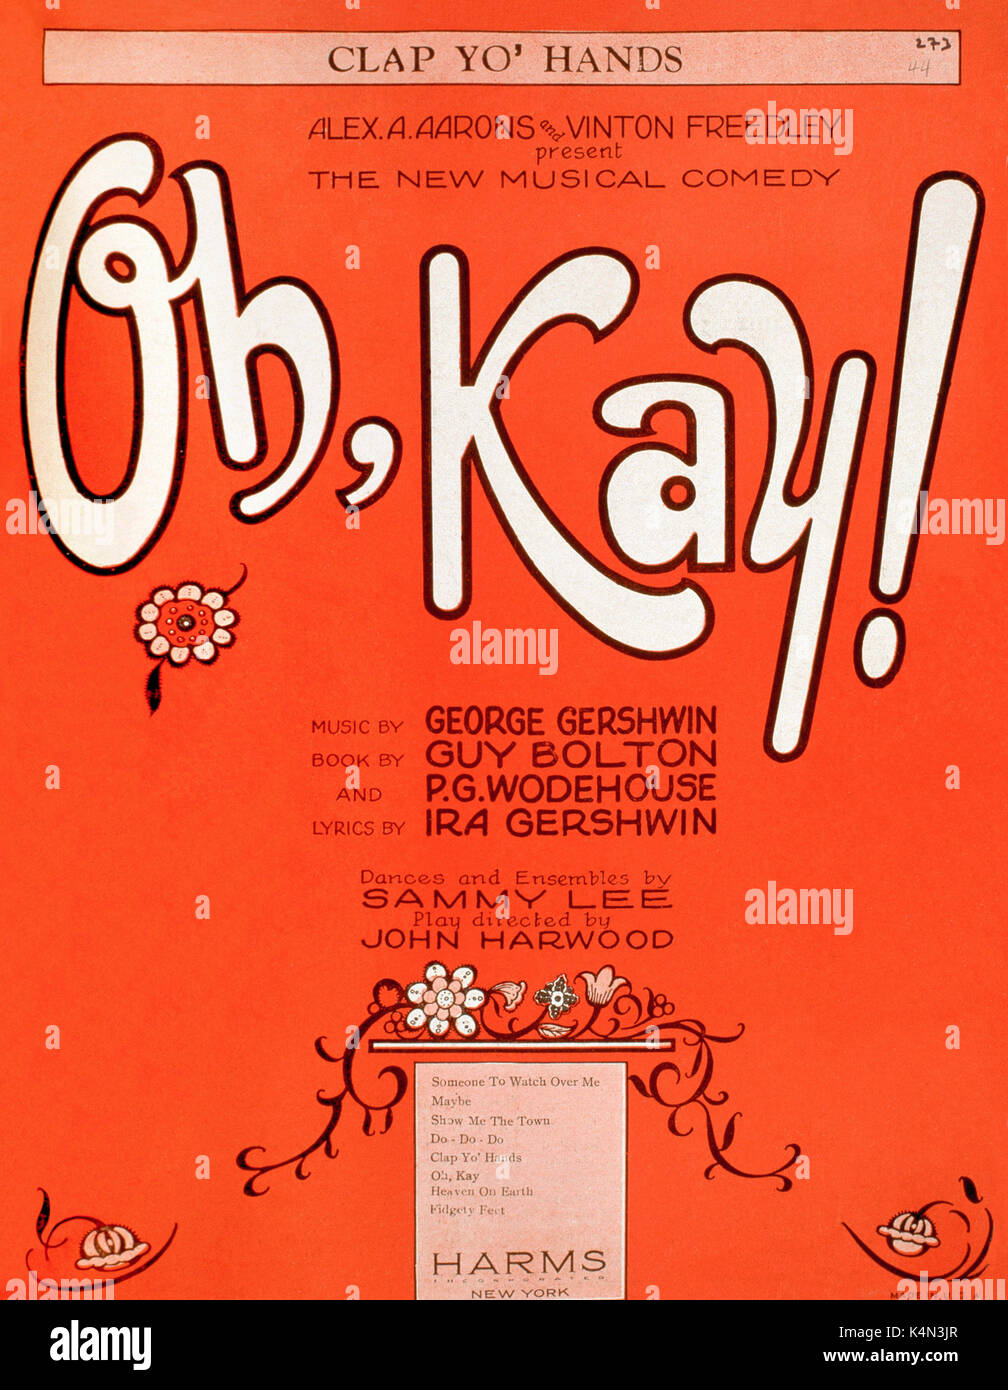 George Gershwins "Oh, Kay' Score, musikalische Komödie: Musik von George Gershwin, Lyrics von ICH Gershwin; aus dem Buch von P G Wodehouse und Guy Bolton. Amerikanische Komponist und Pianist (1870-1939). Stockfoto